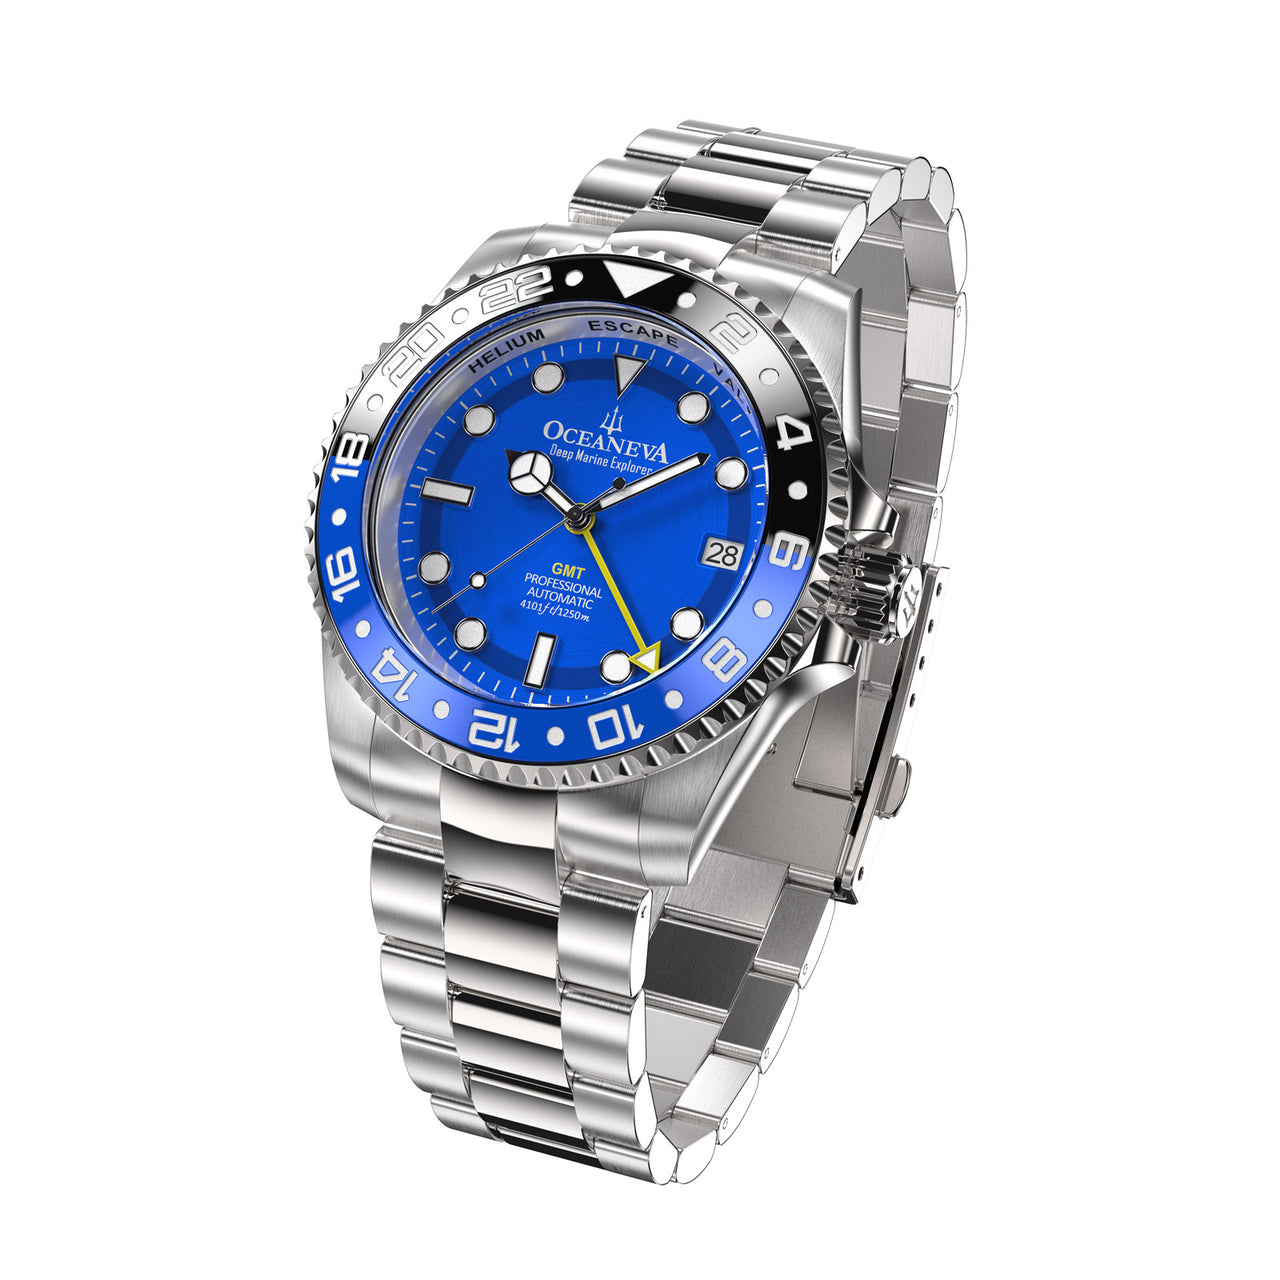 Oceaneva™ Men's GMT Automatic Deep Marine Explorer 1250M Pro Diver Blue Dial Watch